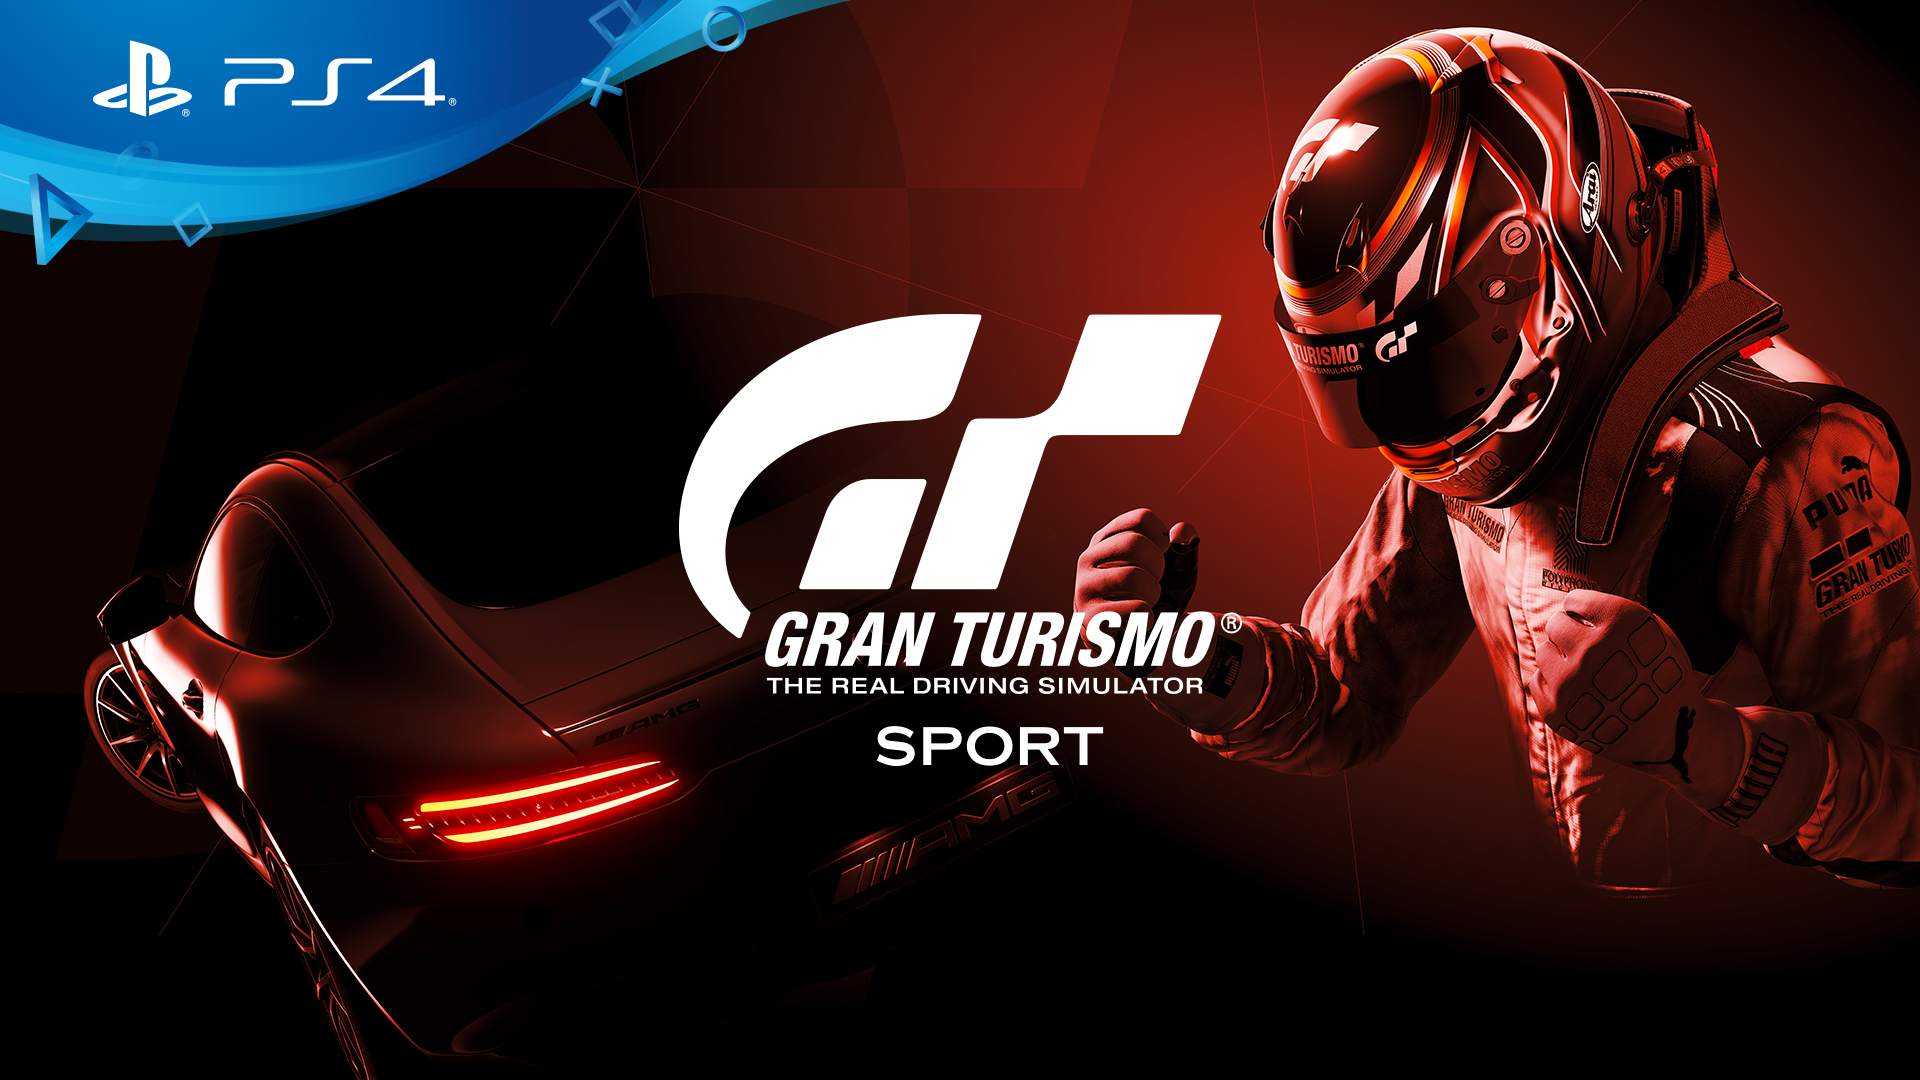 Gran Turismo serisi, Gran Turismo SPORT ile PlayStation 4 üzerinde devam ediyor